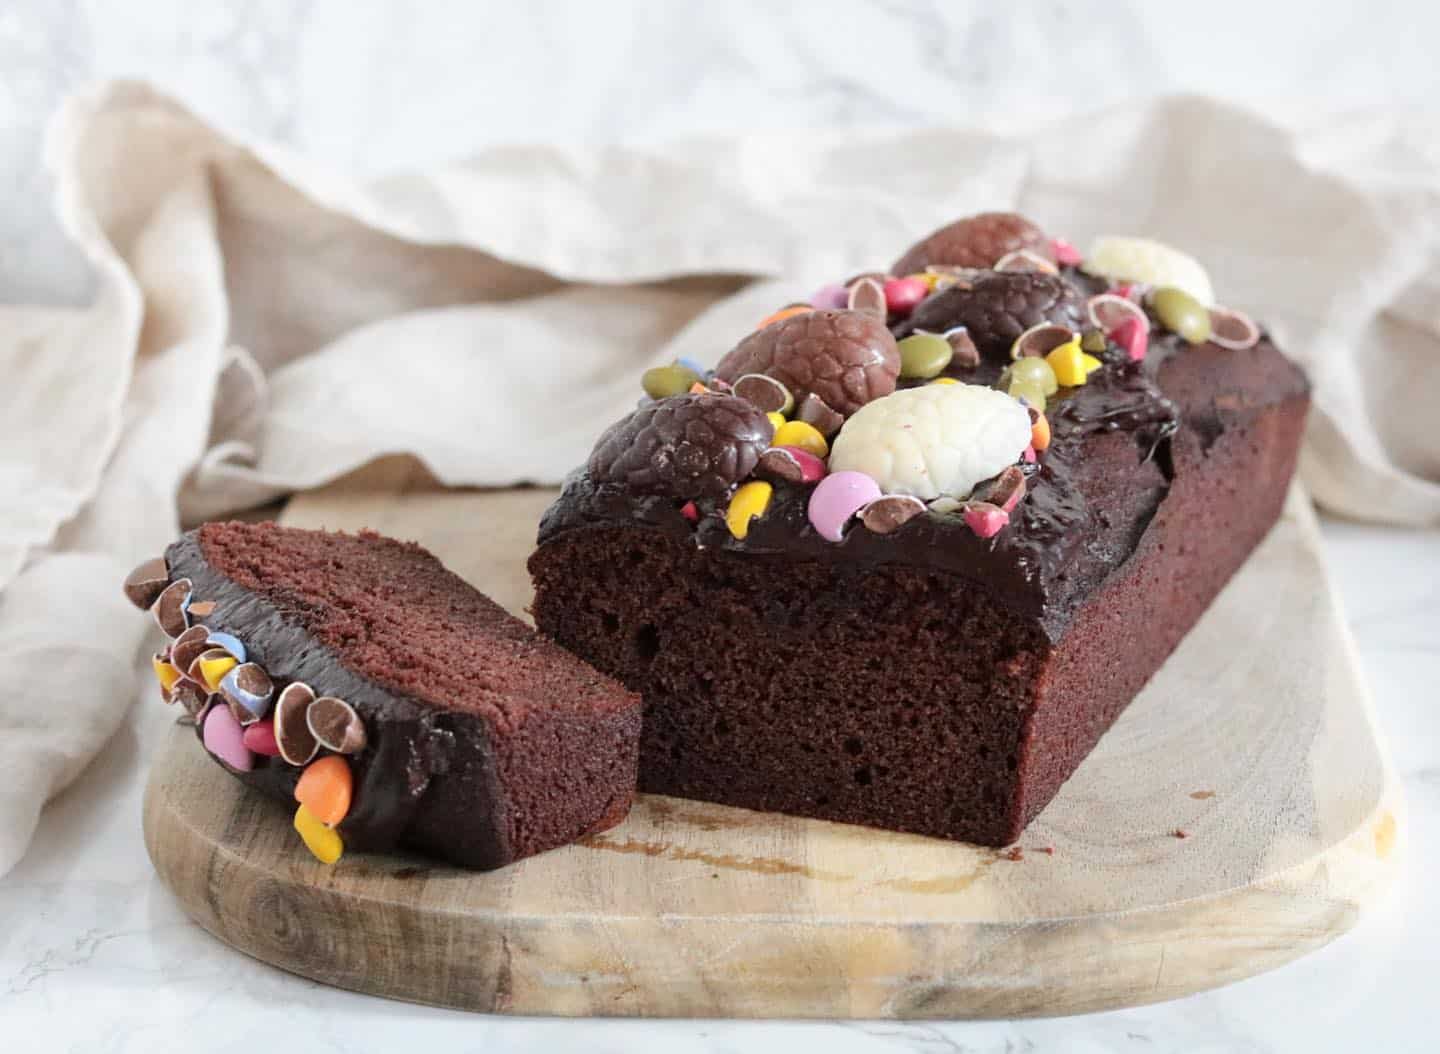 Vandaag heb ik deze chocoladecake gemaakt voor Pasen! 🐣 De cake is al een feestje om naar te kijken door de gezellige chocosmiles smarties en de paaseitjes uit @oanhswinkeltje.nl met daaronder een chocolade glaze 🍫 Helemaal geschikt voor op de paas tafel! 🐰 Het recept is te vinden op mijn website. (Link in bio) Een fijne middag! X 💝 #koolhydraatarm #koolhydraatarmerecepten #lowcarb #keto #paleo #pasen #chocoladecake